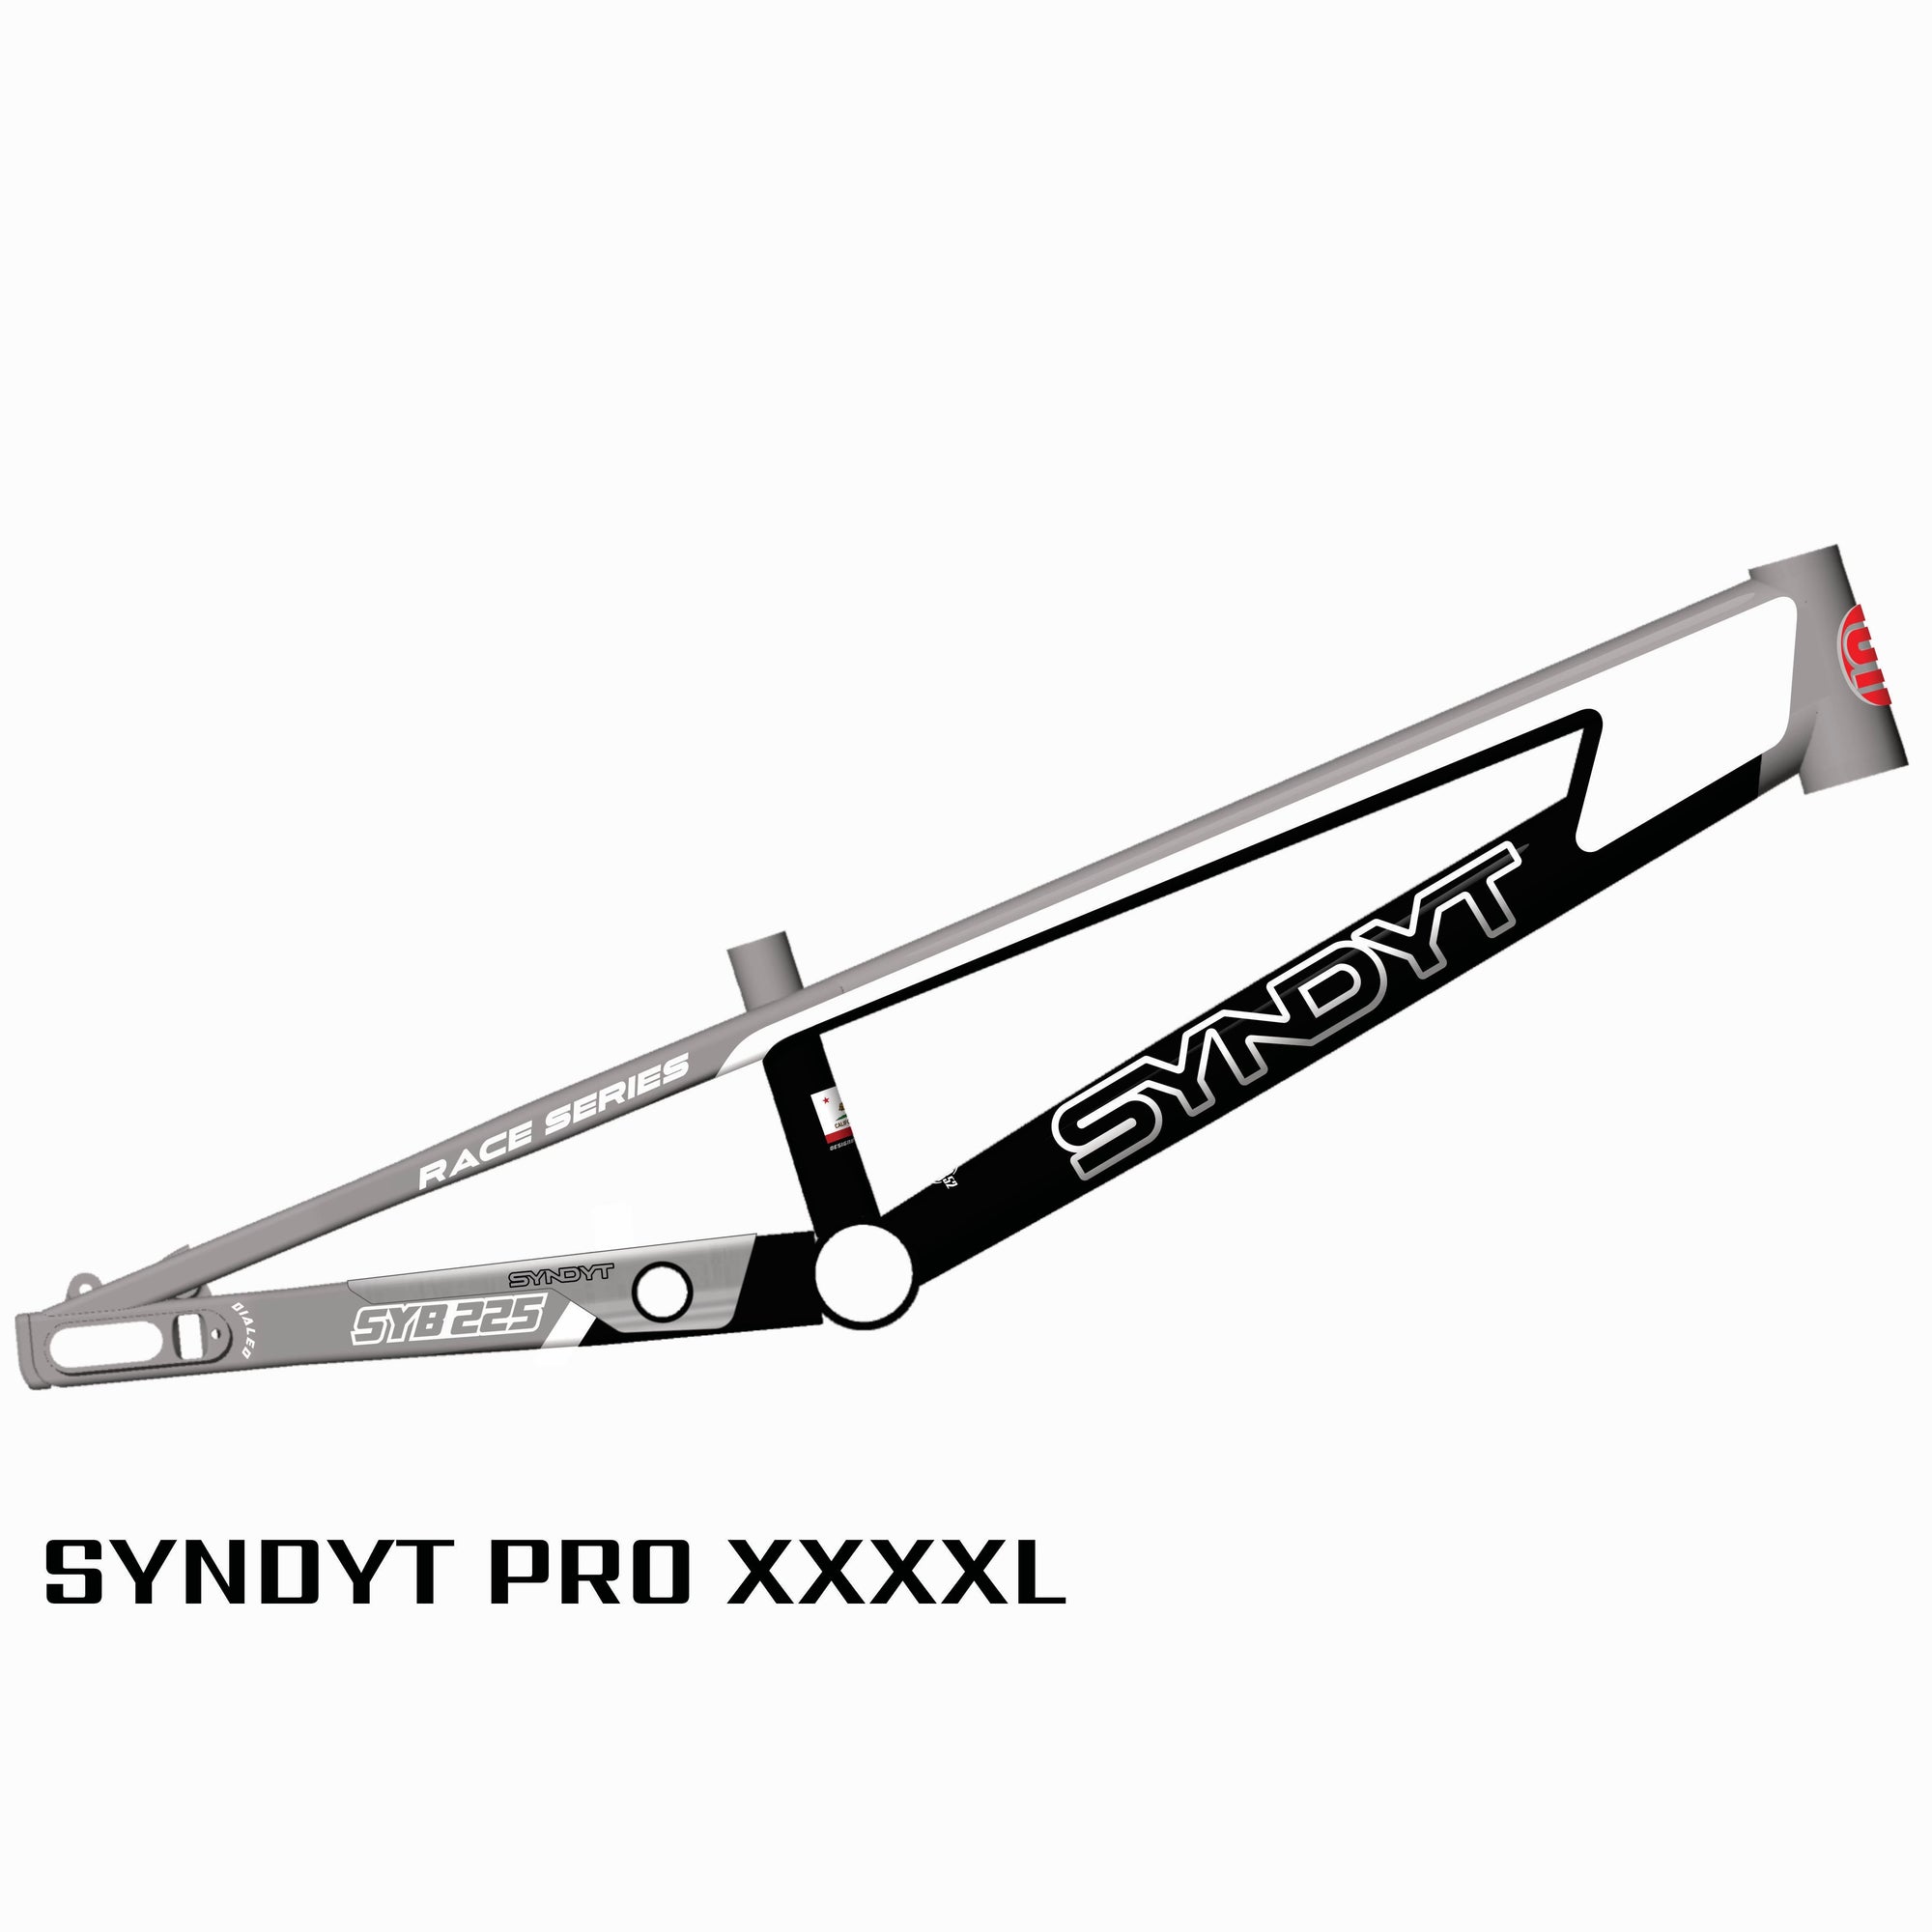 SYB 225: 22.5” TT Pro 4XL BMX Frame